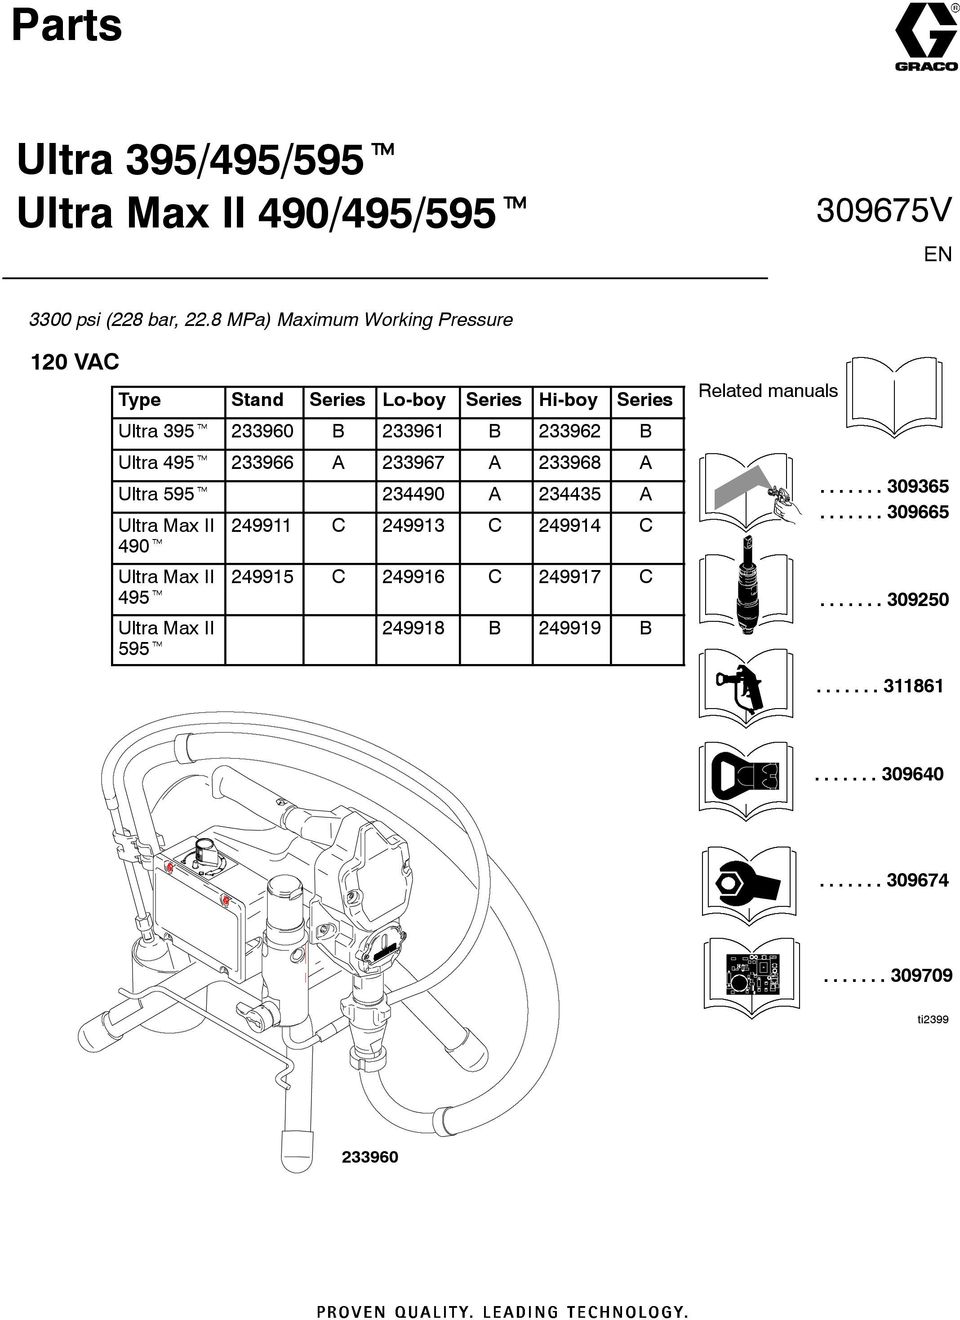 Ultra 495t 233966 A 233967 A 233968 A Ultra 595t 234490 A 234435 A Ultra Max II 490t Ultra Max II 495t Ultra Max II